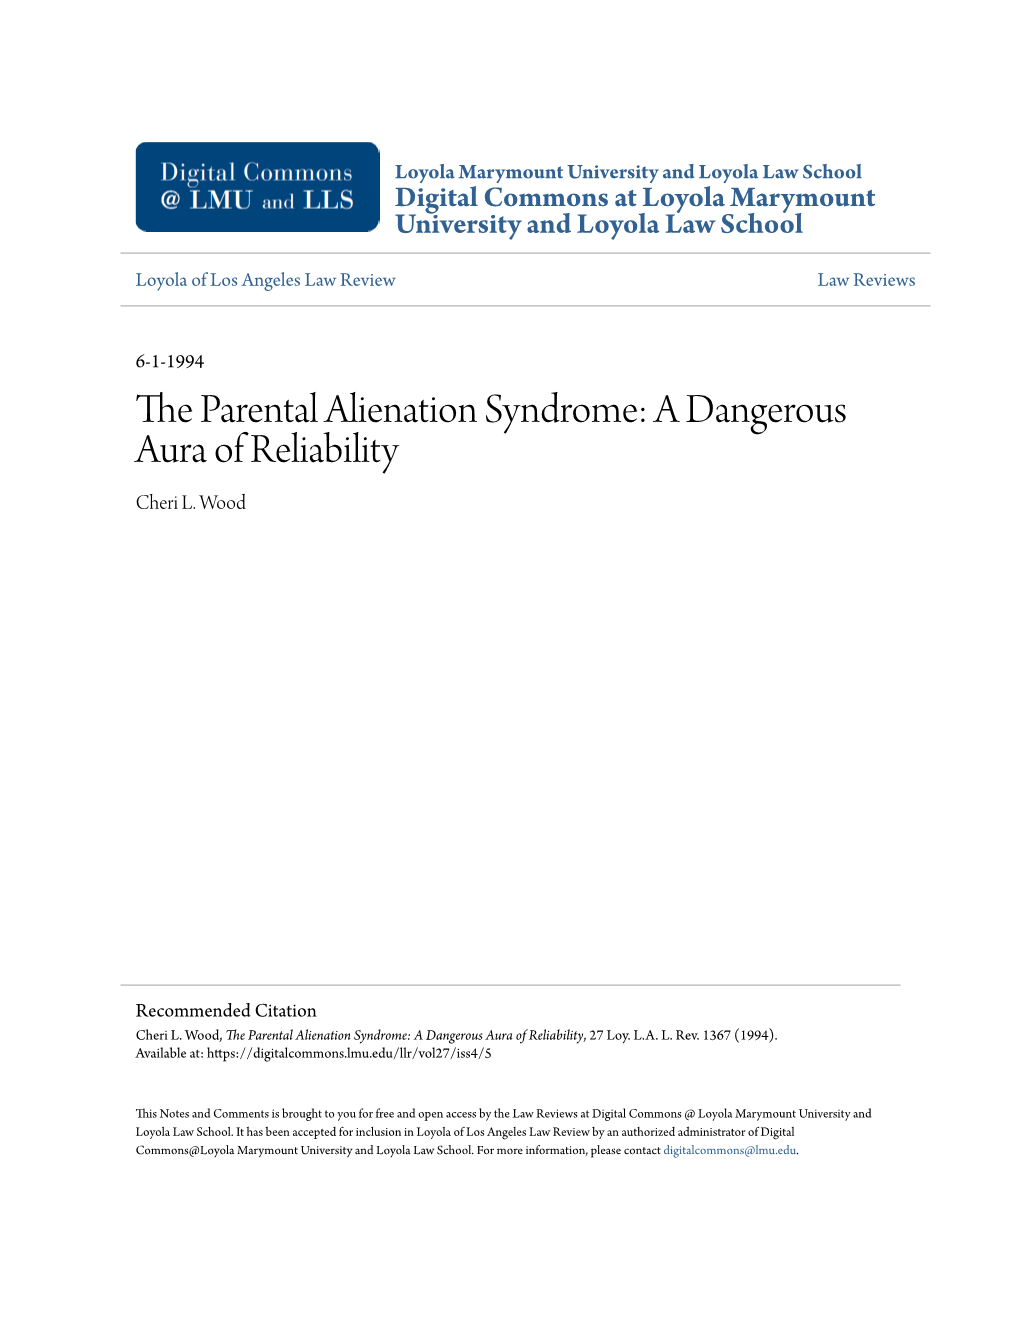 The Parental Alienation Syndrome: a Dangerous Aura of Reliability, 27 Loy